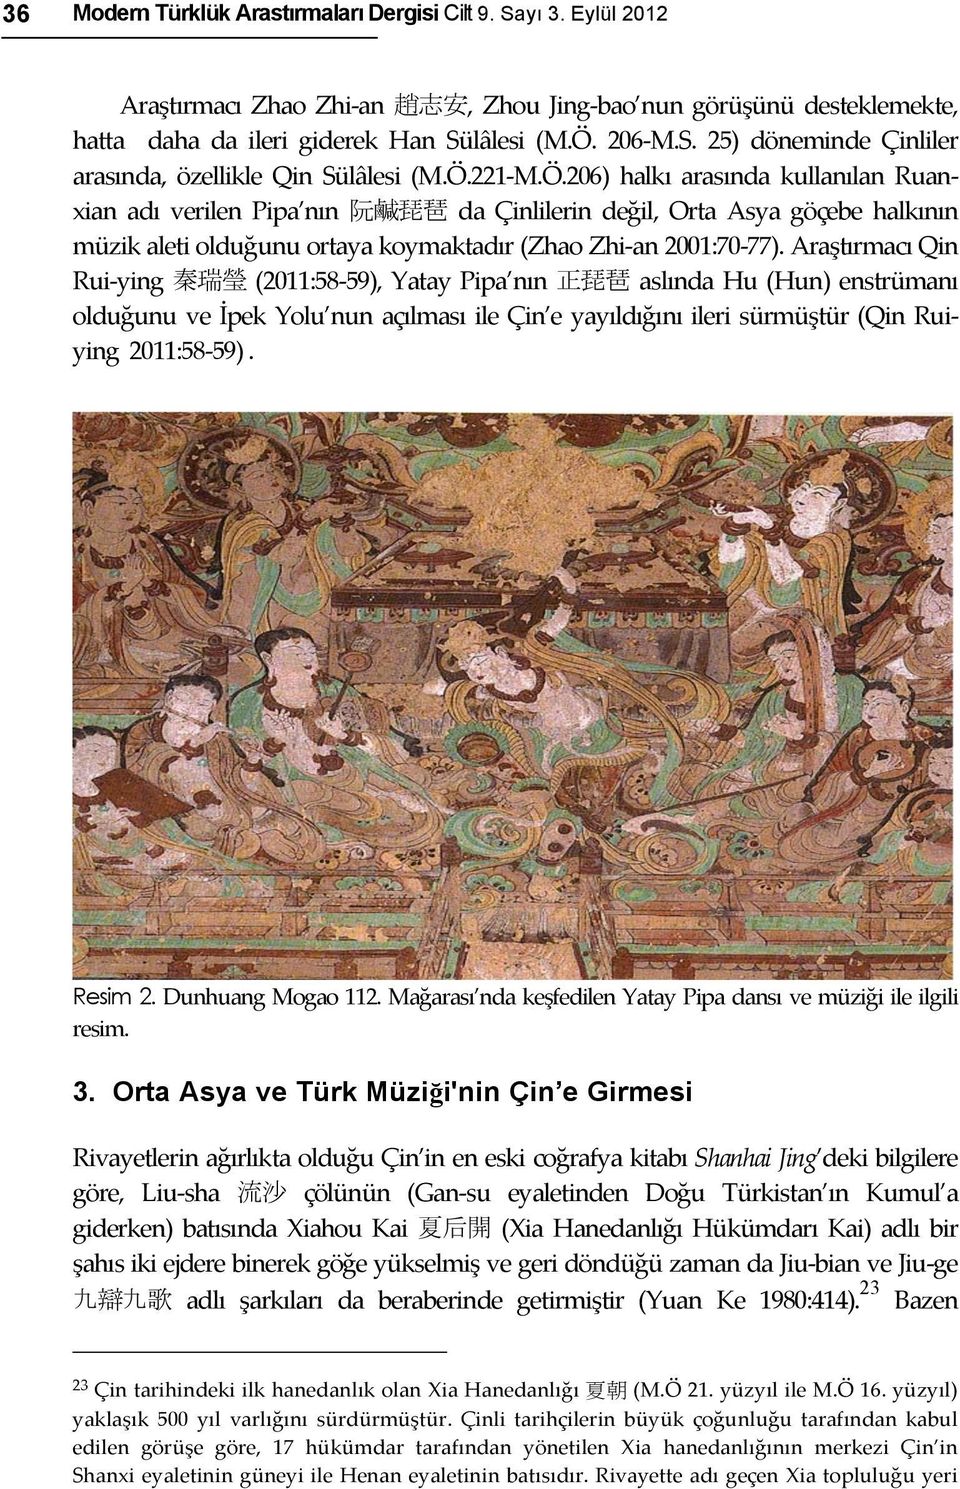 Araştırmacı Qin Rui- ying 秦瑞瑩 (2011:58-59), Yatay Pipa nın 正琵琶 aslında Hu (Hun) enstrümanı olduğunu ve İpek Yolu nun açılması ile Çin e yayıldığını ileri sürmüştür (Qin Rui- ying 2011:58-59). Resim 2.